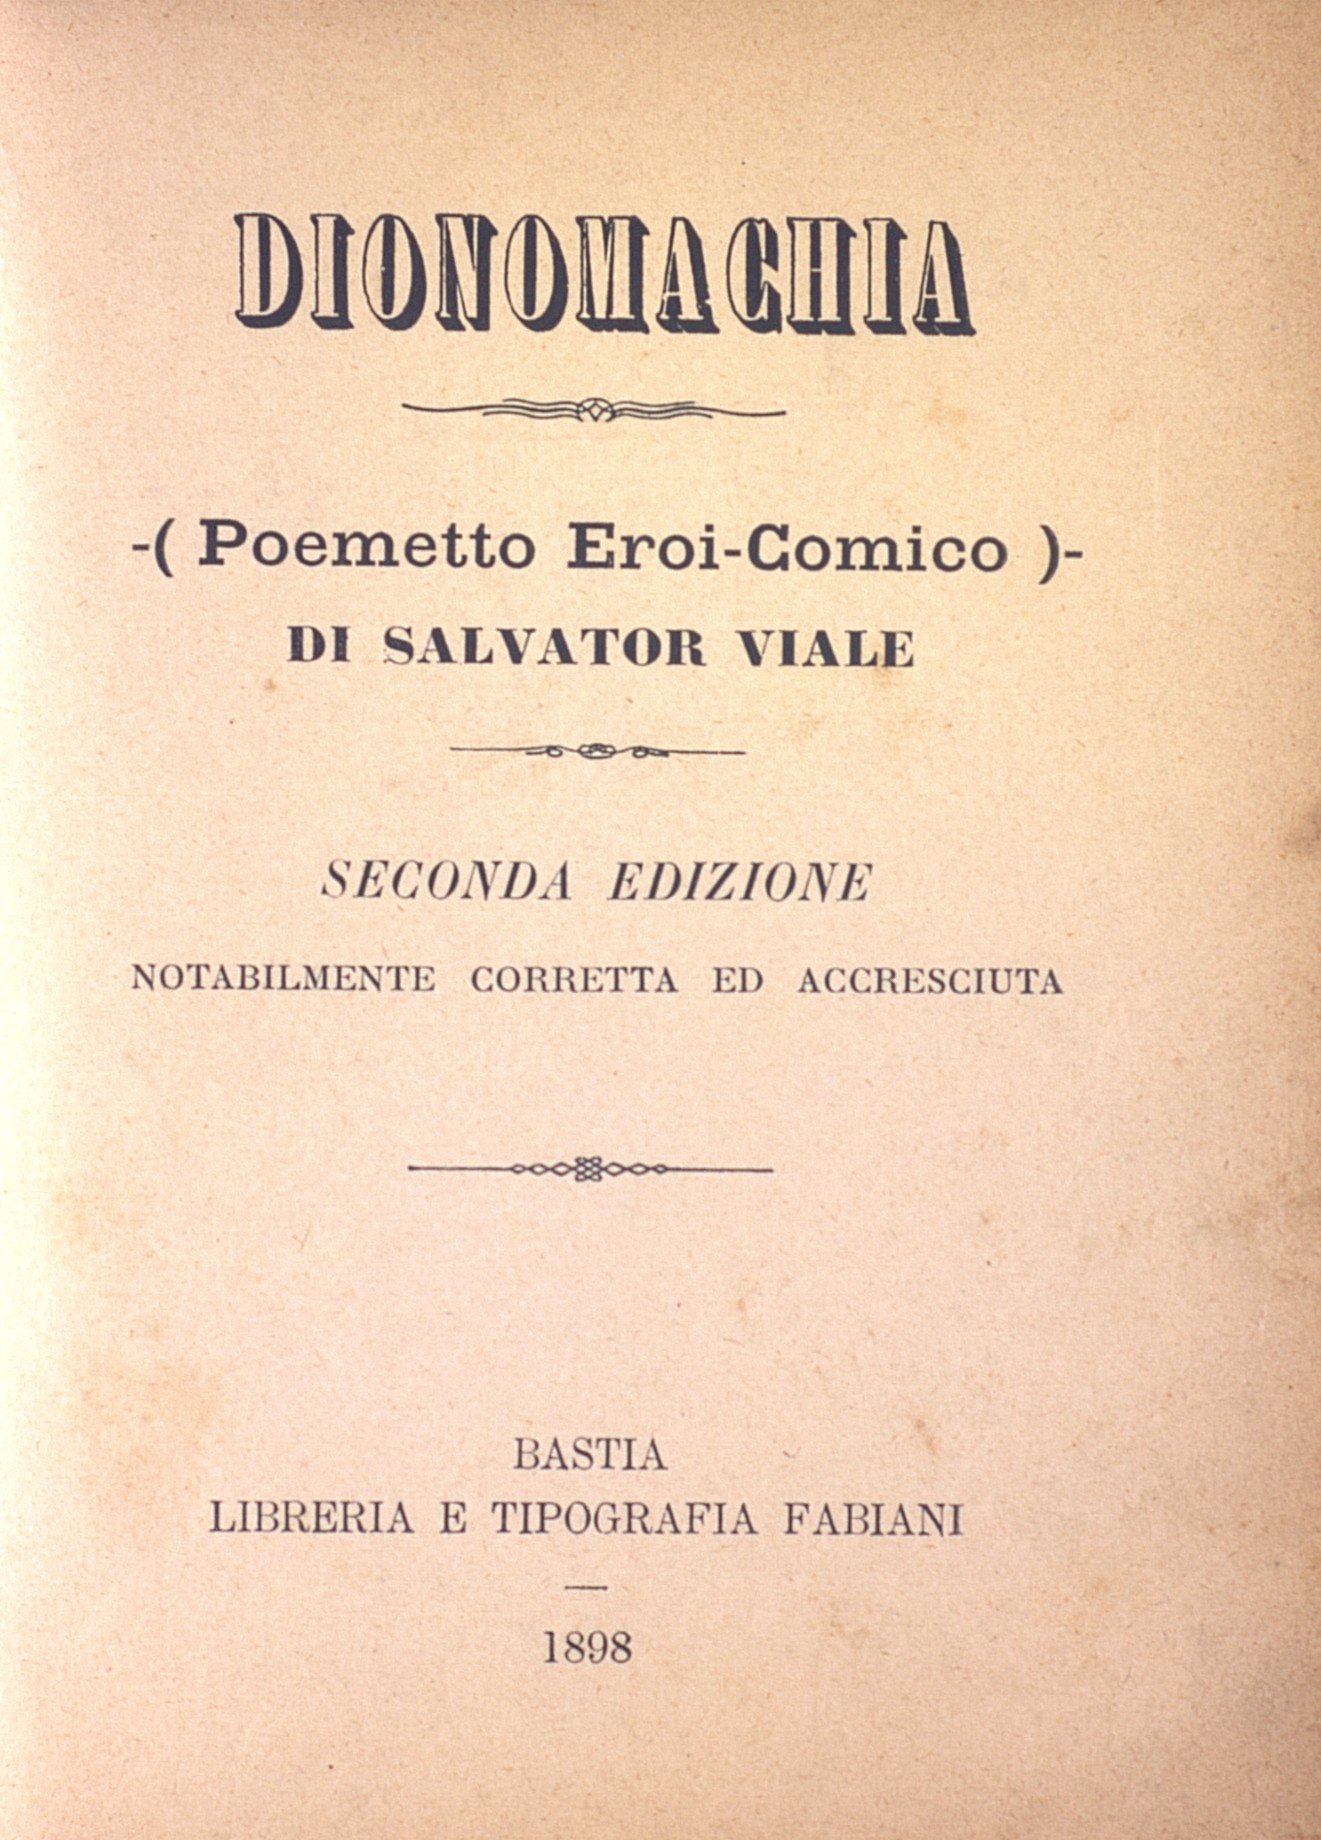 >Dionomachia, poemetto eroi-comico di Salvador Viale, seconda edizione notabilmente correta ed accresciuta